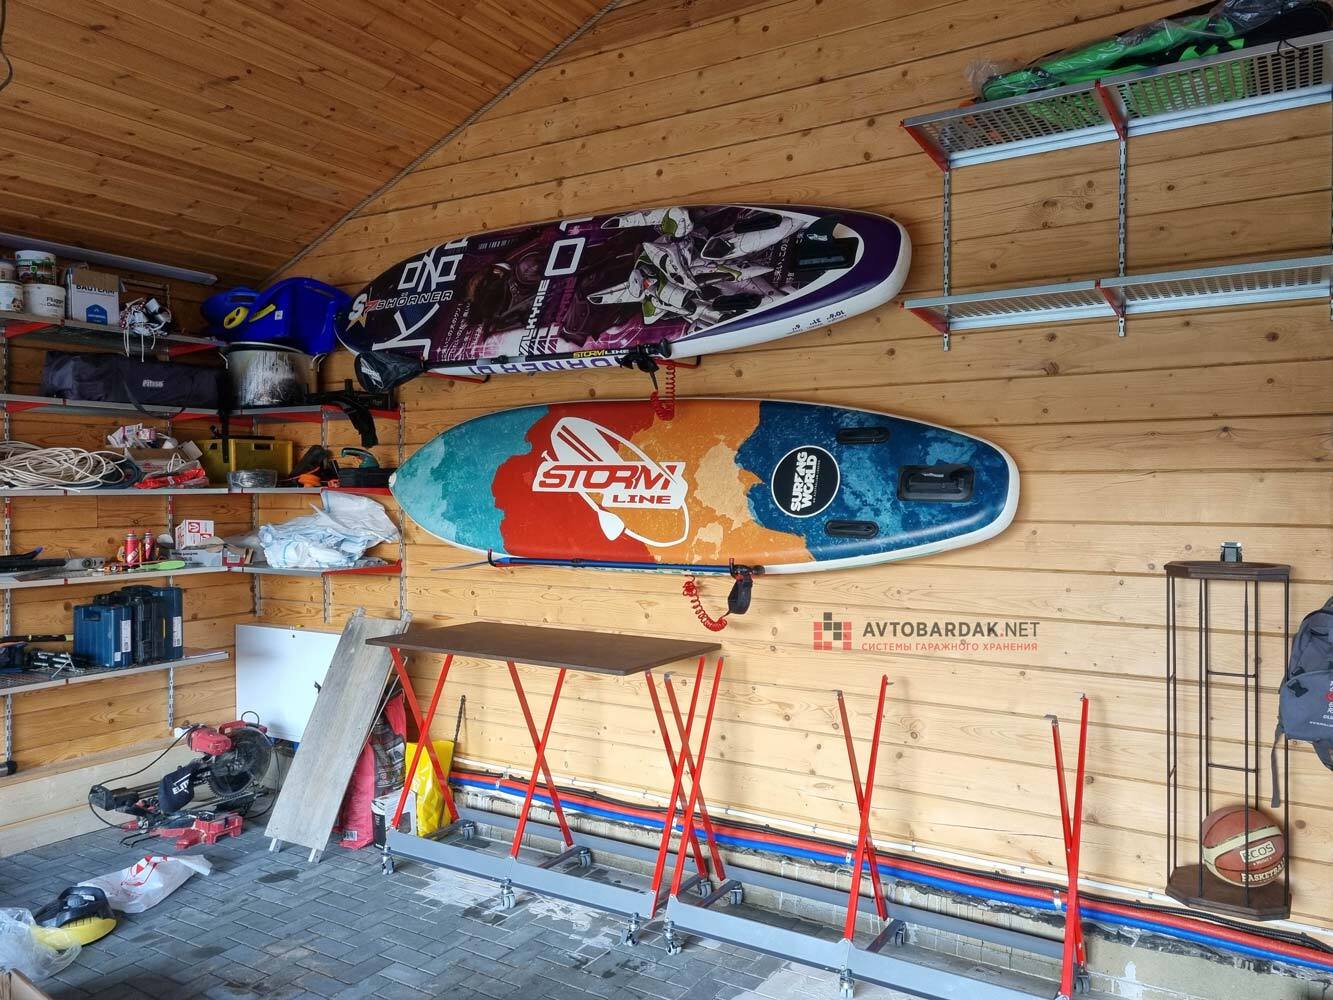 Крепления для горизонтального хранения сноубордов и лыж (крепление к стене)